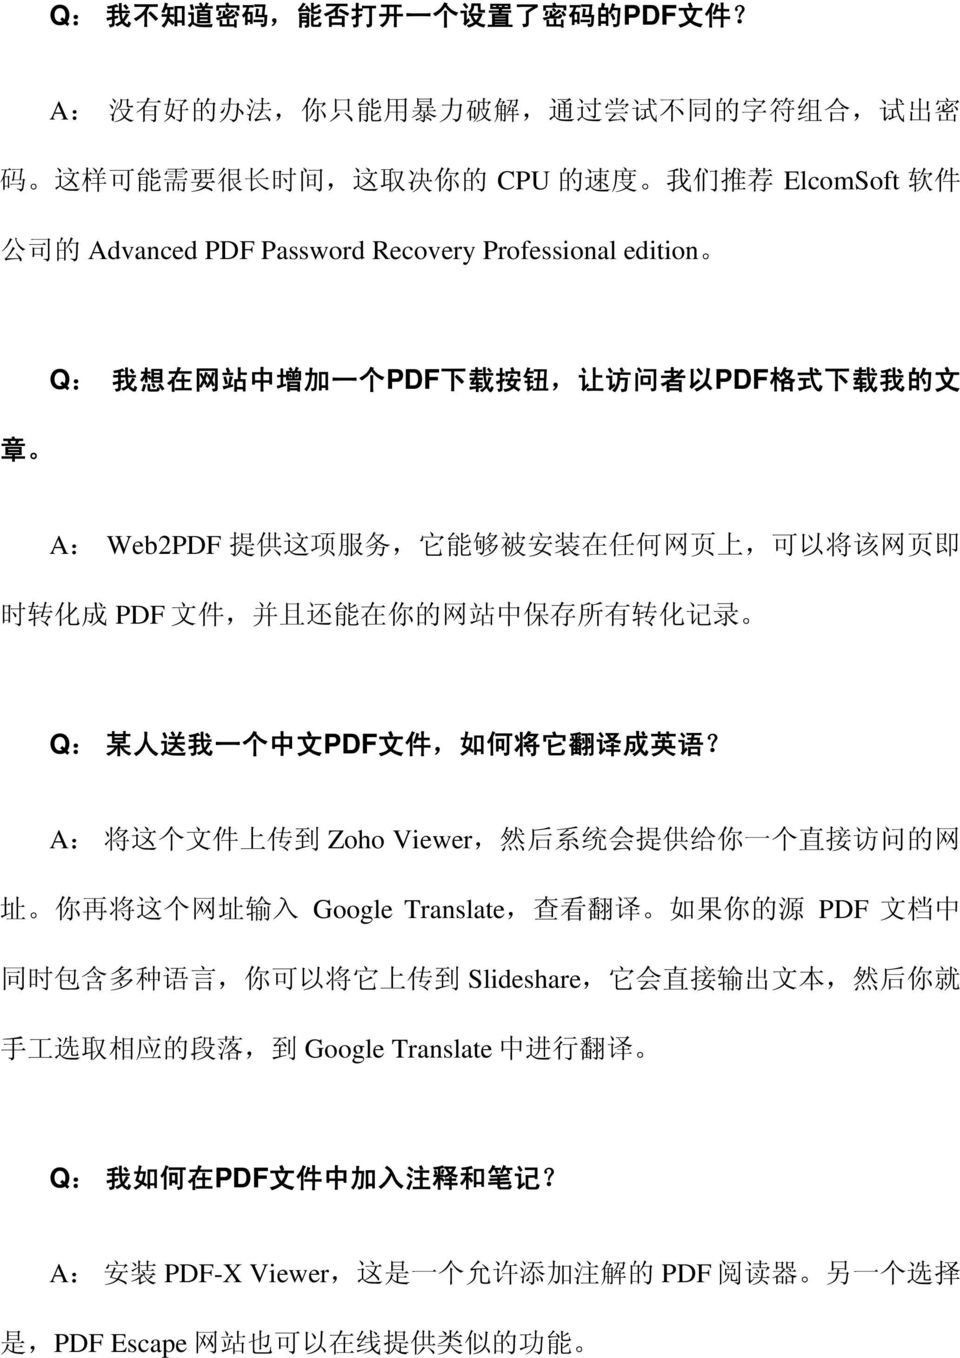 中 增 加 一 个 PDF 下 载 按 钮, 让 访 问 者 以 PDF 格 式 下 载 我 的 文 A: Web2PDF 提 供 这 项 服 务, 它 能 够 被 安 装 在 任 何 网 页 上, 可 以 将 该 网 页 即 时 转 化 成 PDF 文 件, 并 且 还 能 在 你 的 网 站 中 保 存 所 有 转 化 记 录 Q: 某 人 送 我 一 个 中 文 PDF 文 件, 如 何